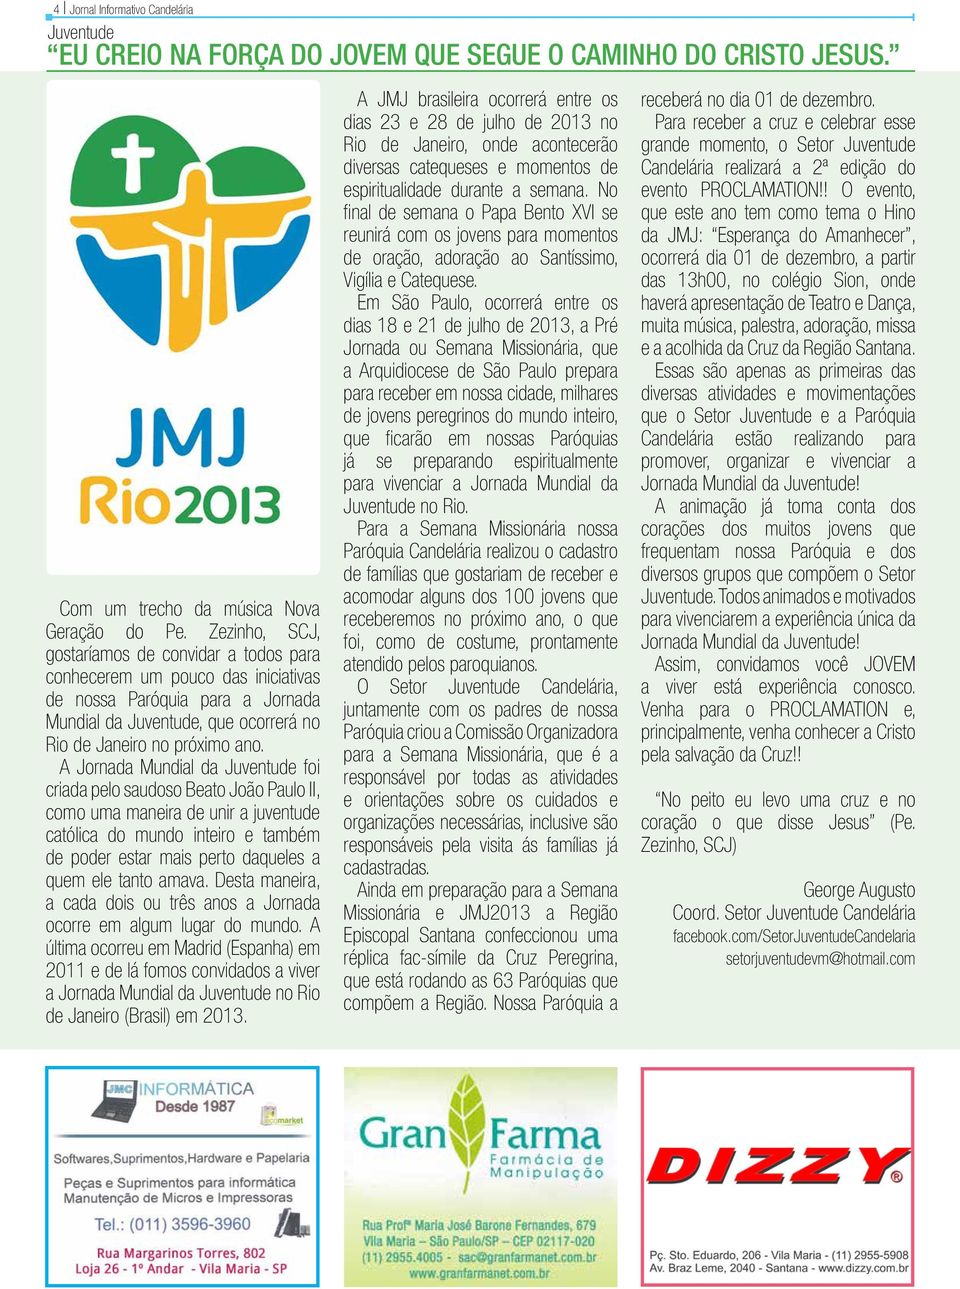 Zezinho, SCJ, gostaríamos de convidar a todos para conhecerem um pouco das iniciativas de nossa Paróquia para a Jornada Mundial da Juventude, que ocorrerá no Rio de Janeiro no próximo ano.